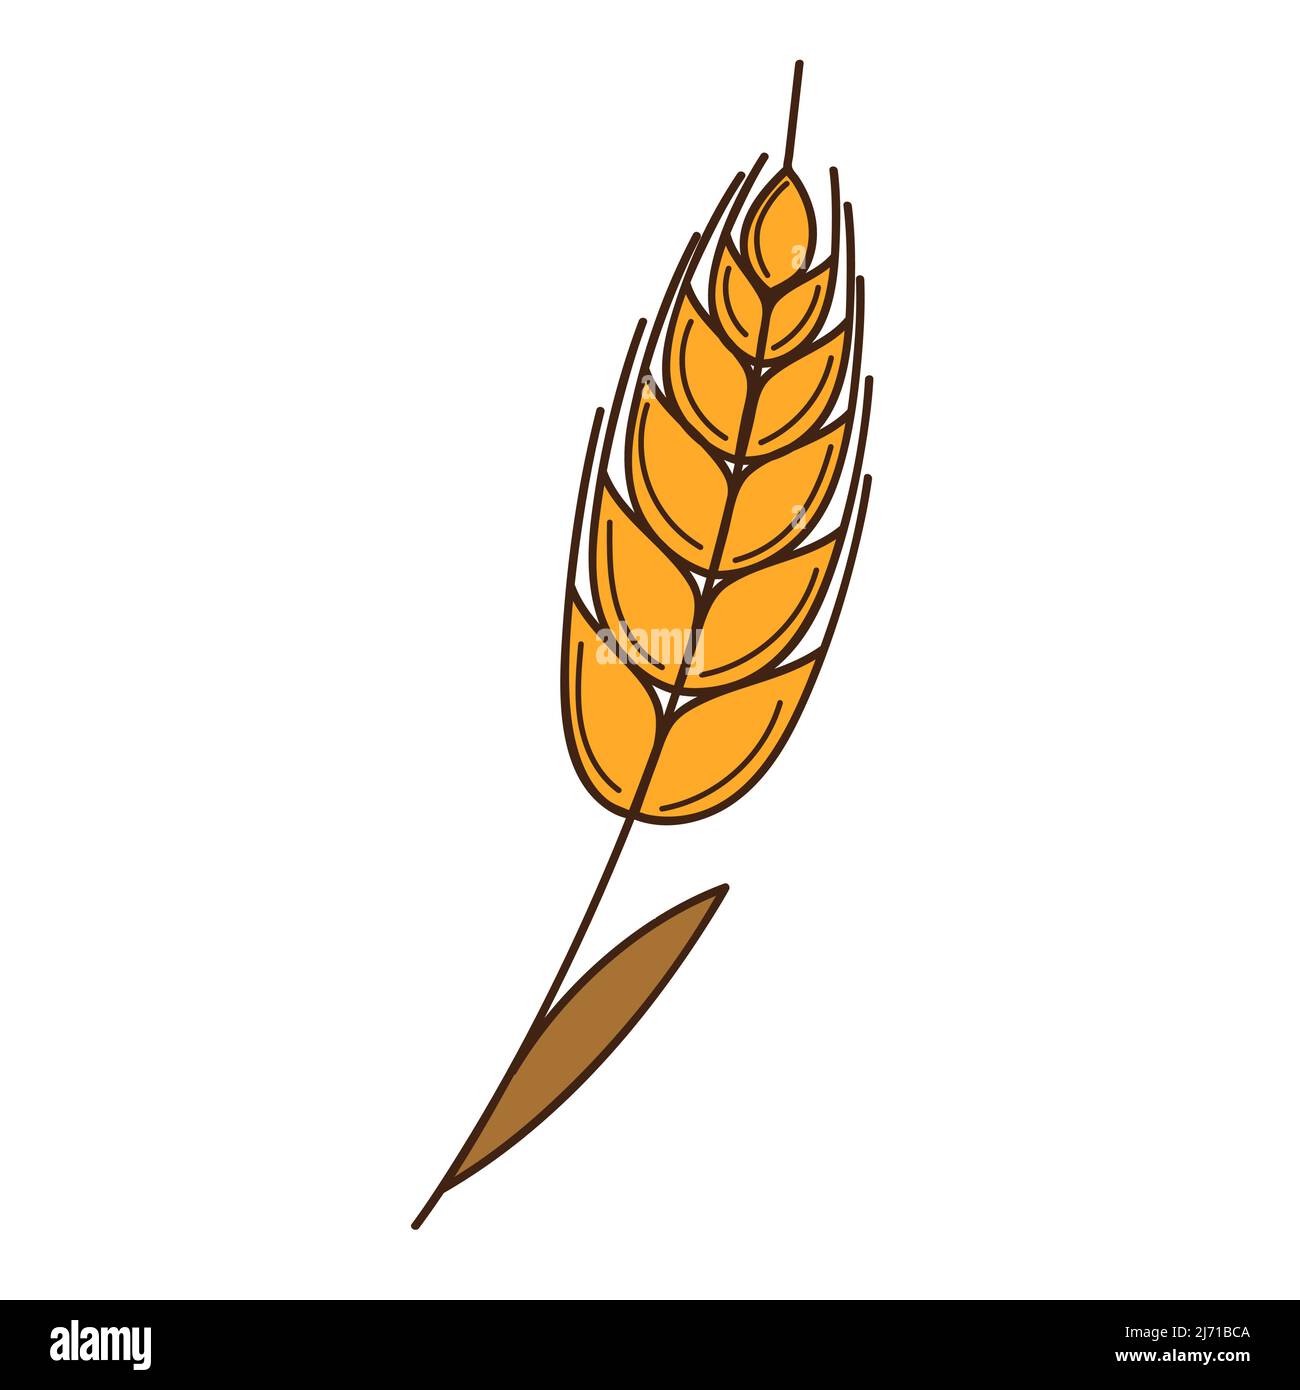 Gelber Weizen, Roggenspikelet. Ein Symbol des Herbstes, die Ernte. Designelement mit Umriss. Doodle, handgezeichnet. Flaches Design. Darstellung von Farbvektoren. Isol Stock Vektor